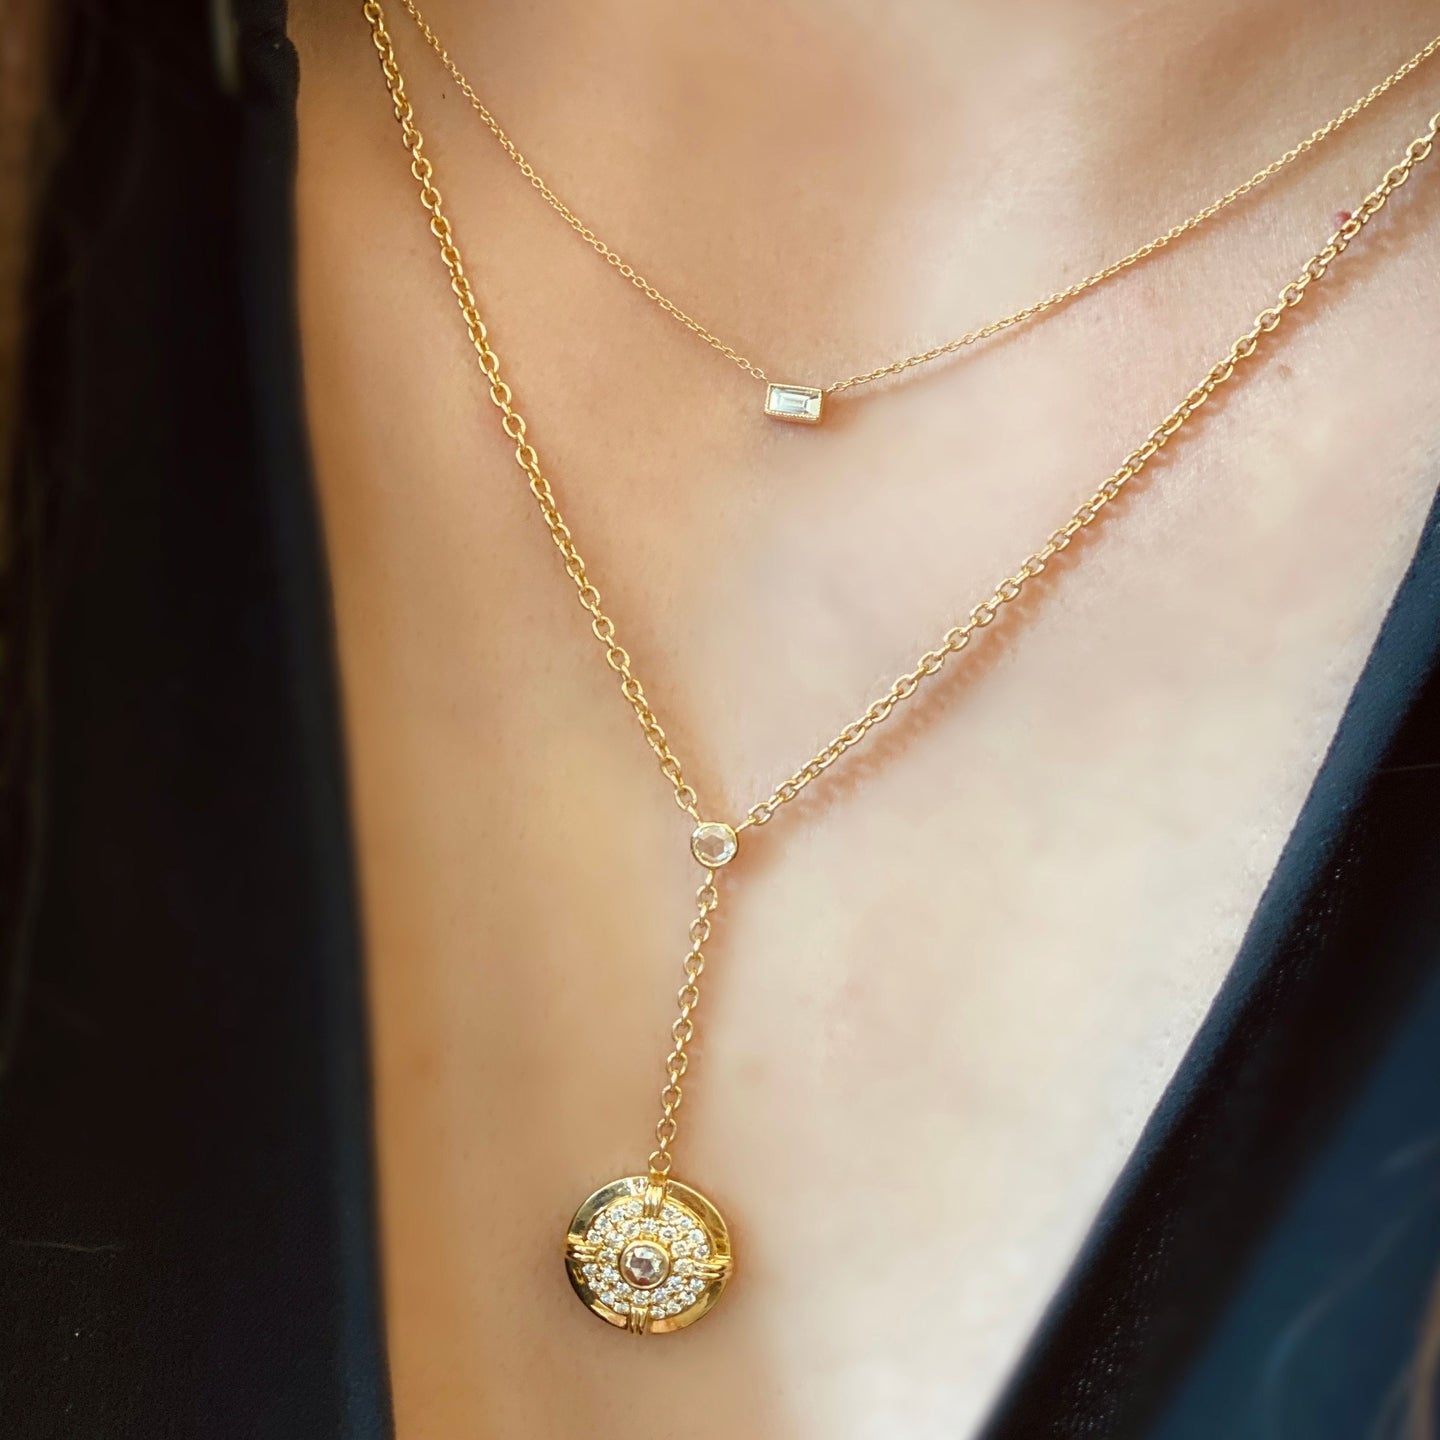 Silhouette Single Stone Baguette Diamond Necklace